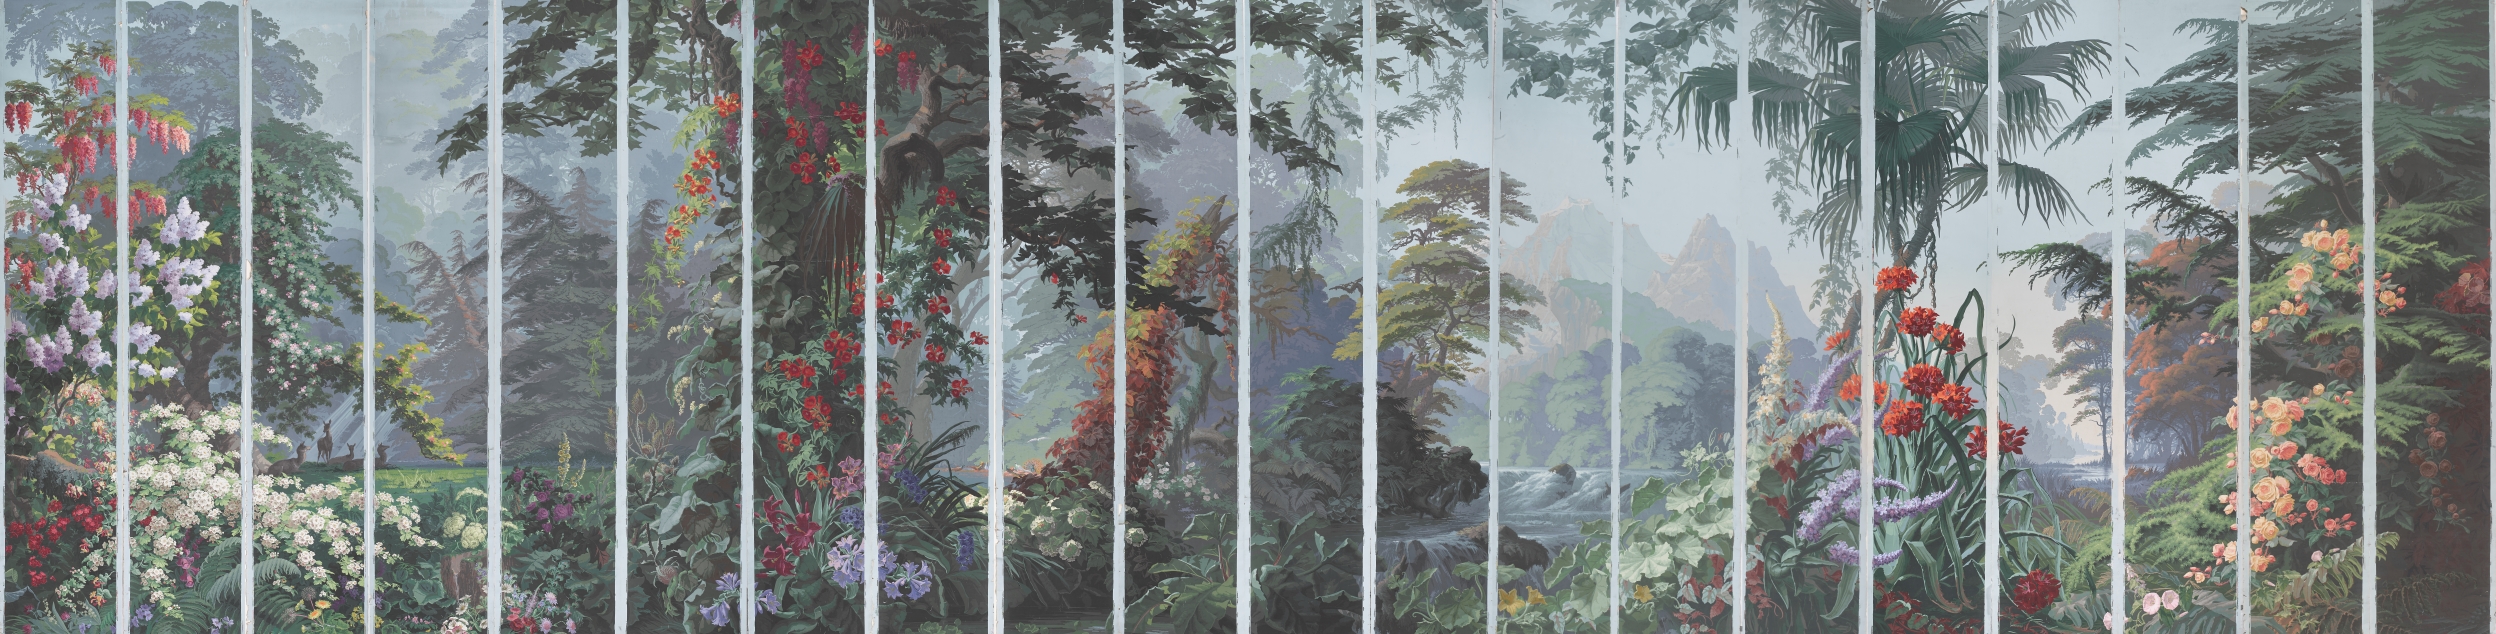 Figure 1: L’Eden panoramic wallpaper